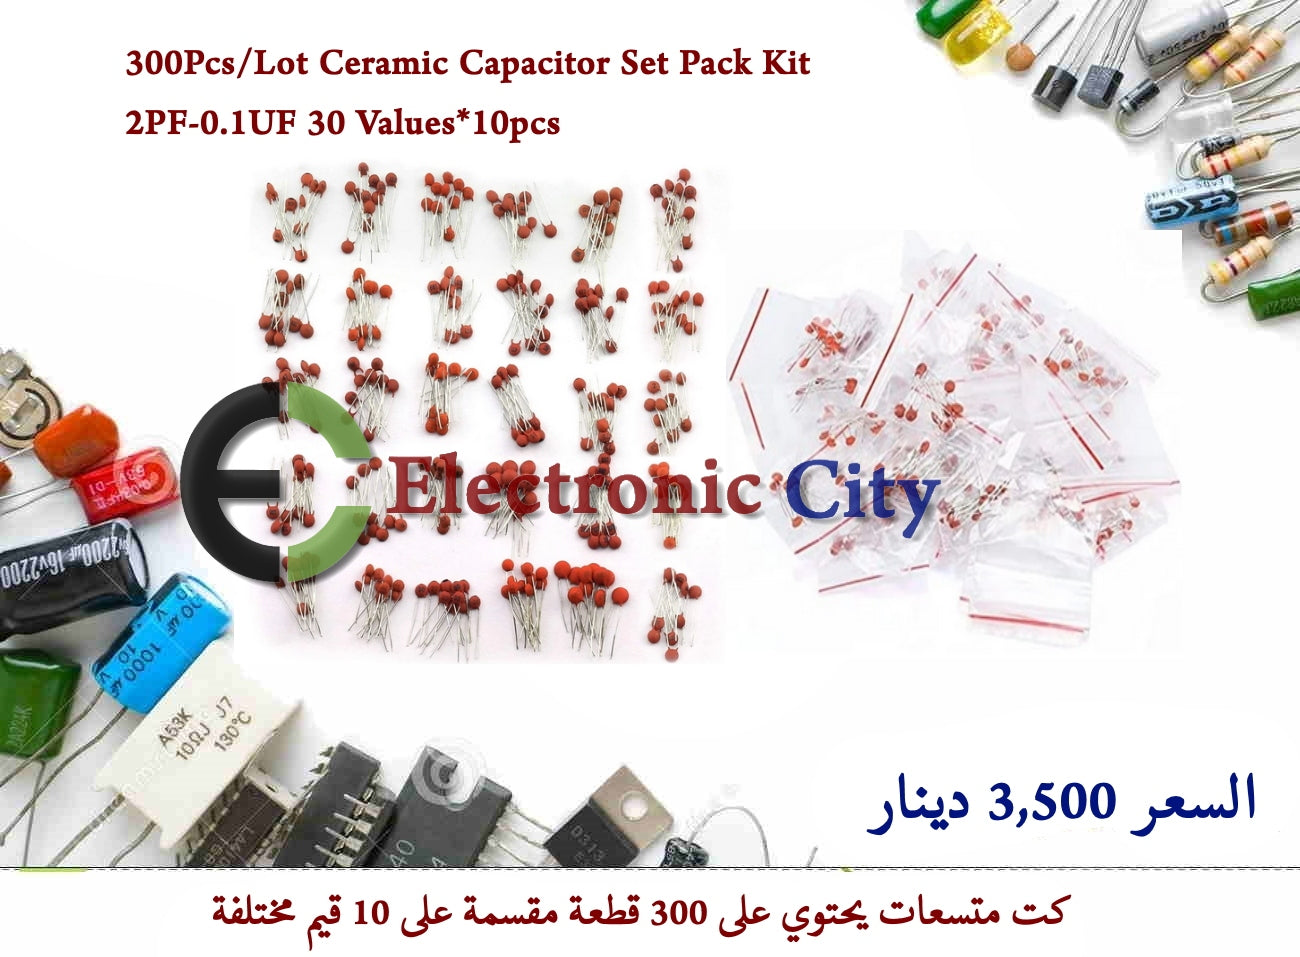 300Pcs-Lot Ceramic Capacitor Set Pack Kit 2PF-0.1UF 30 Values x 10pcs